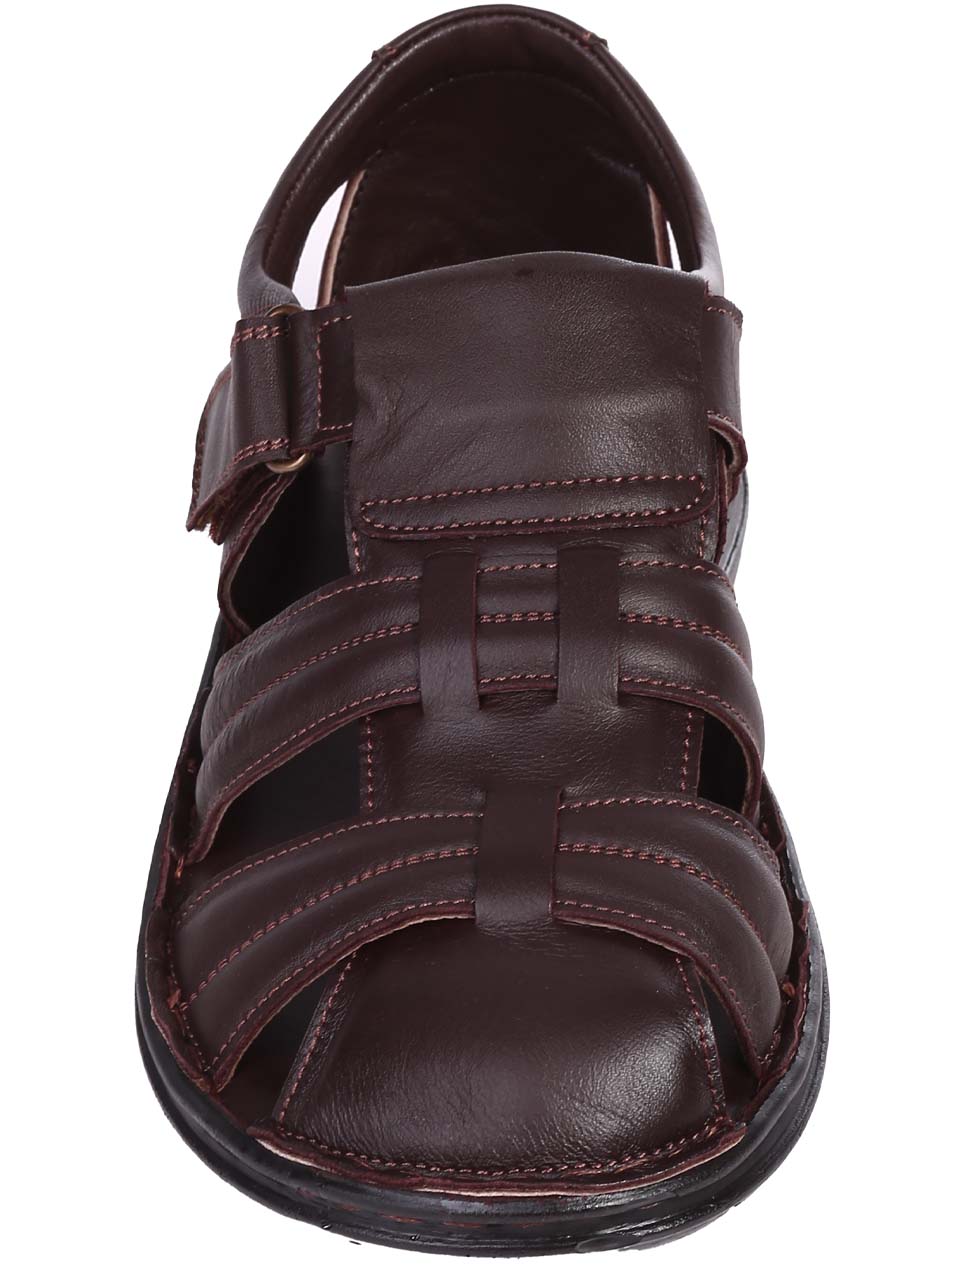 Ежедневни мъжки сандали от естествена кожа в кафяво 8AT-24405 dk.brown